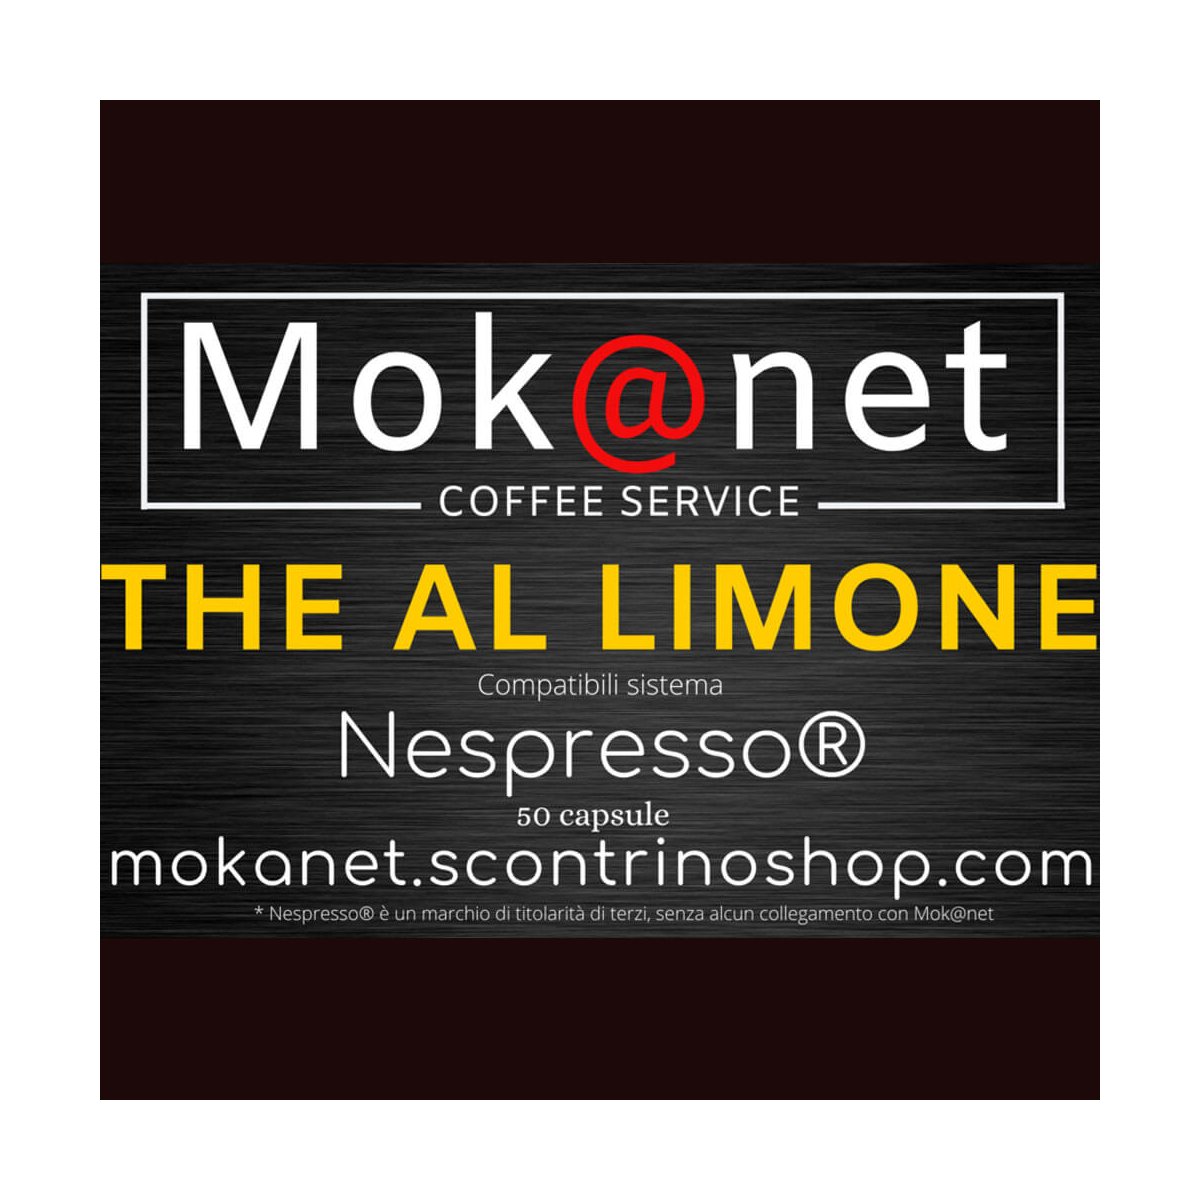 100 CAPSULE COMPATIBILI Nespresso MOK@NET "THE AL LIMONE"